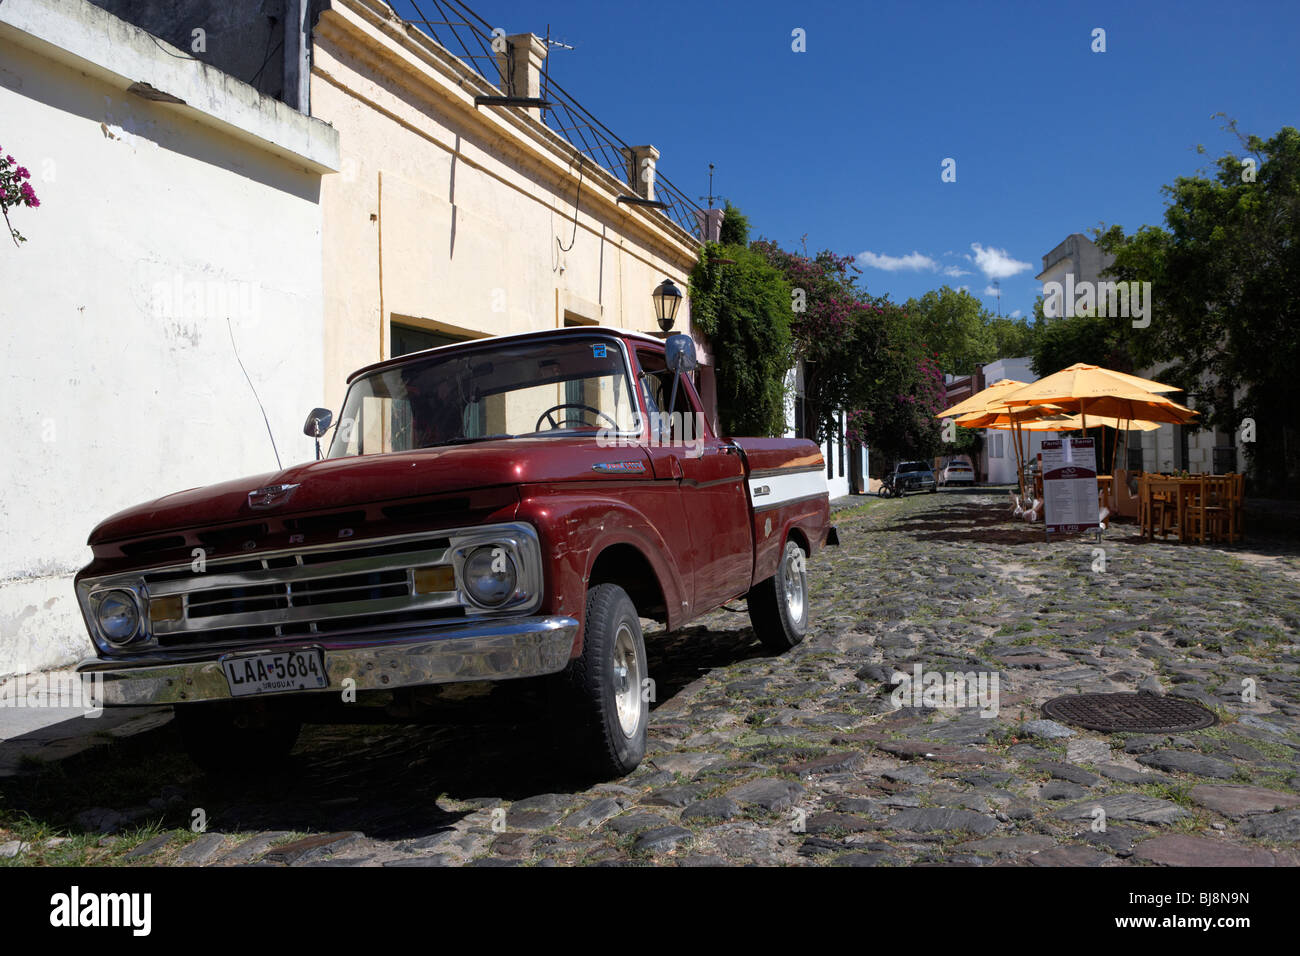 Vieille camionnette Ford sur la rue pavée historique espagnol avec des bordures dans Barrio Historico Colonia del Sacramento en Uruguay Banque D'Images